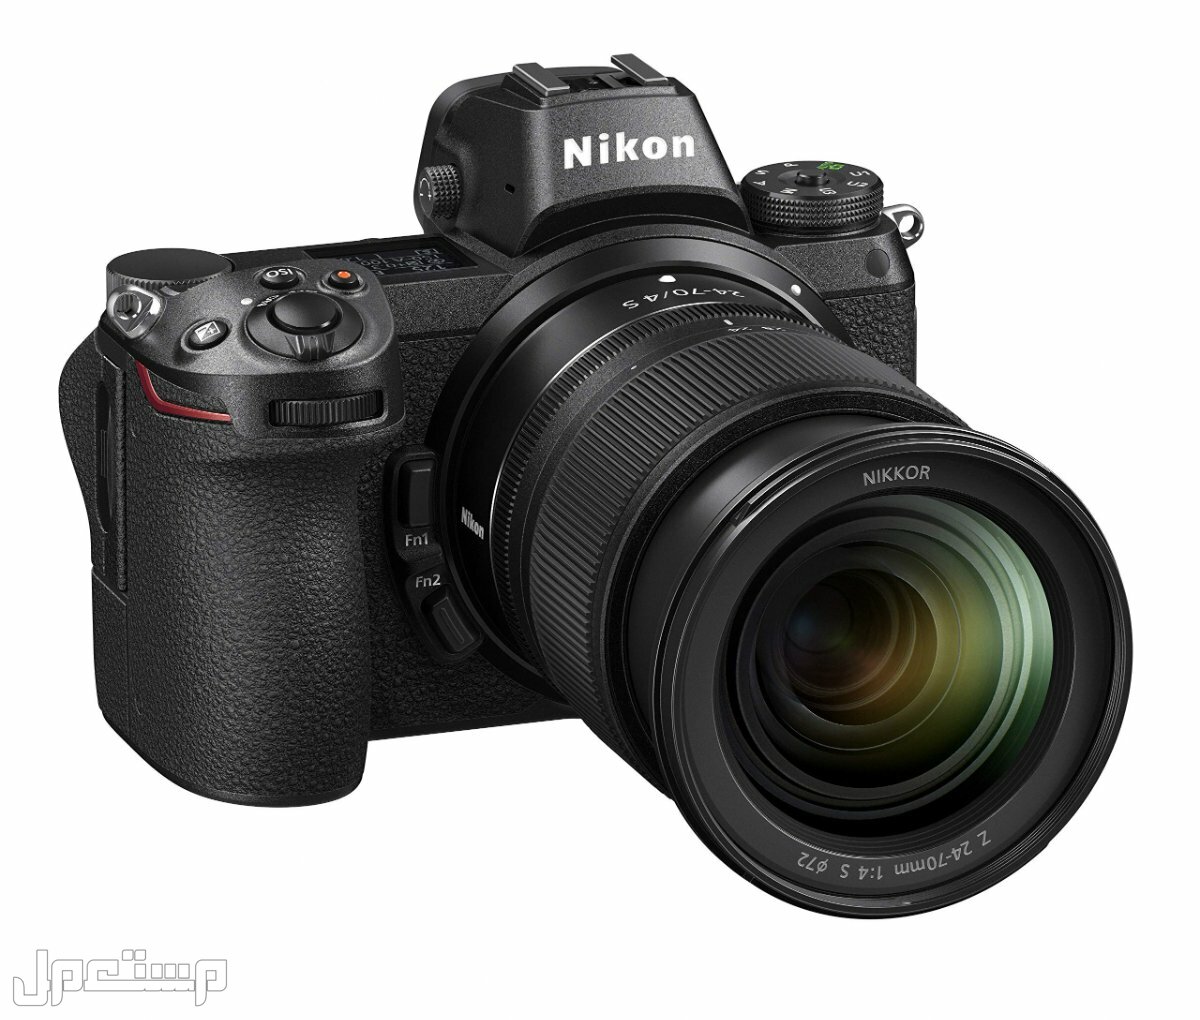 مواصفات ومميزات وأسعار أفضل أنواع كاميرات نيكون للمحترفين في الكويت كاميرا Nikon Z6